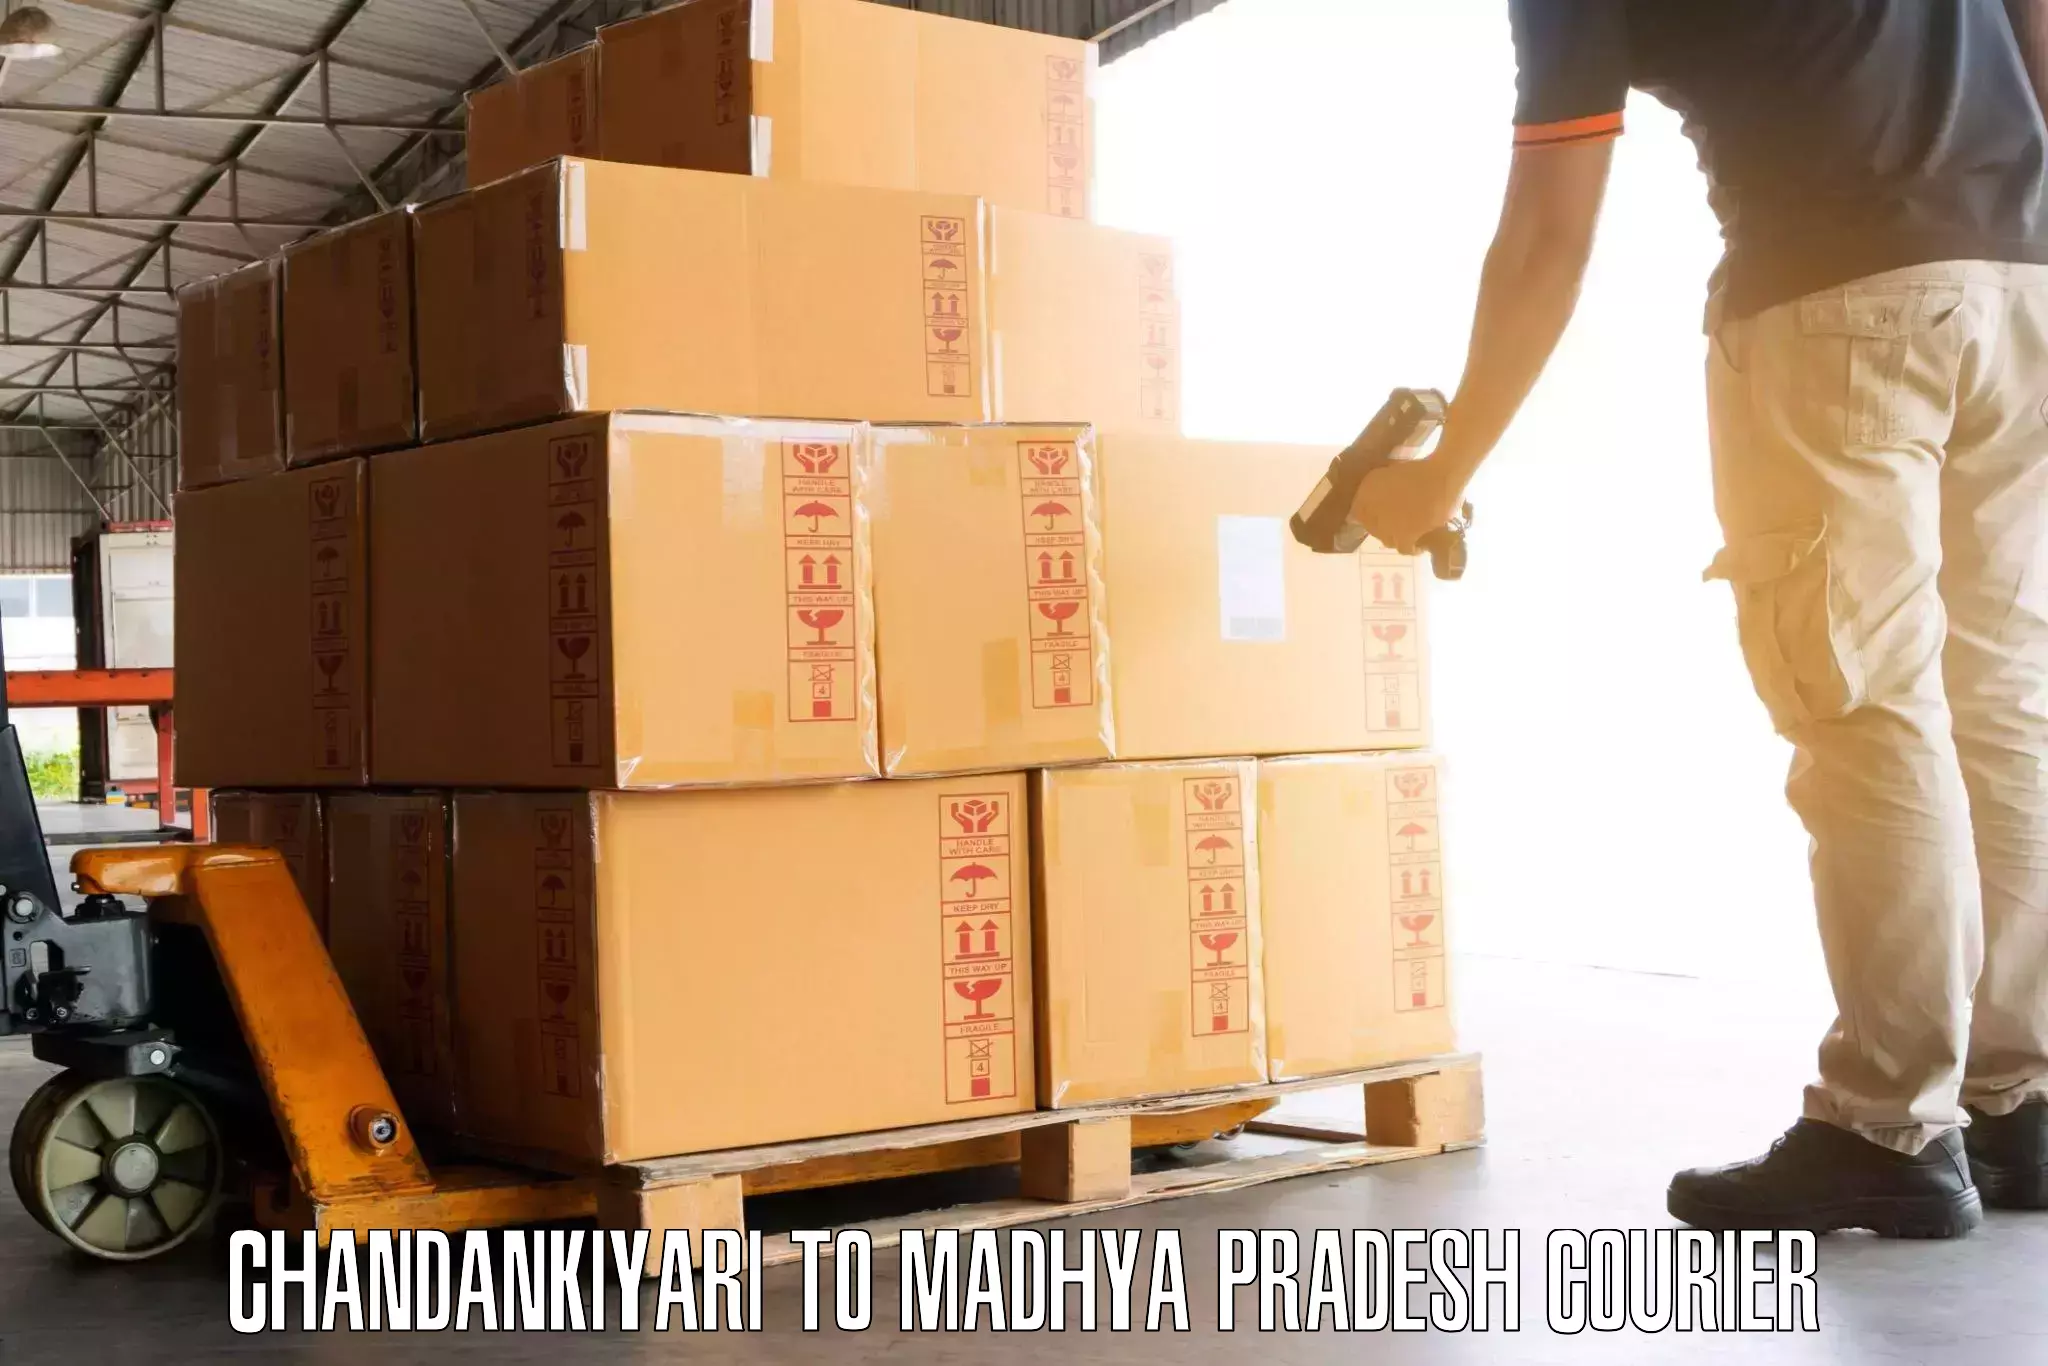 Quick luggage shipment in Chandankiyari to Harda